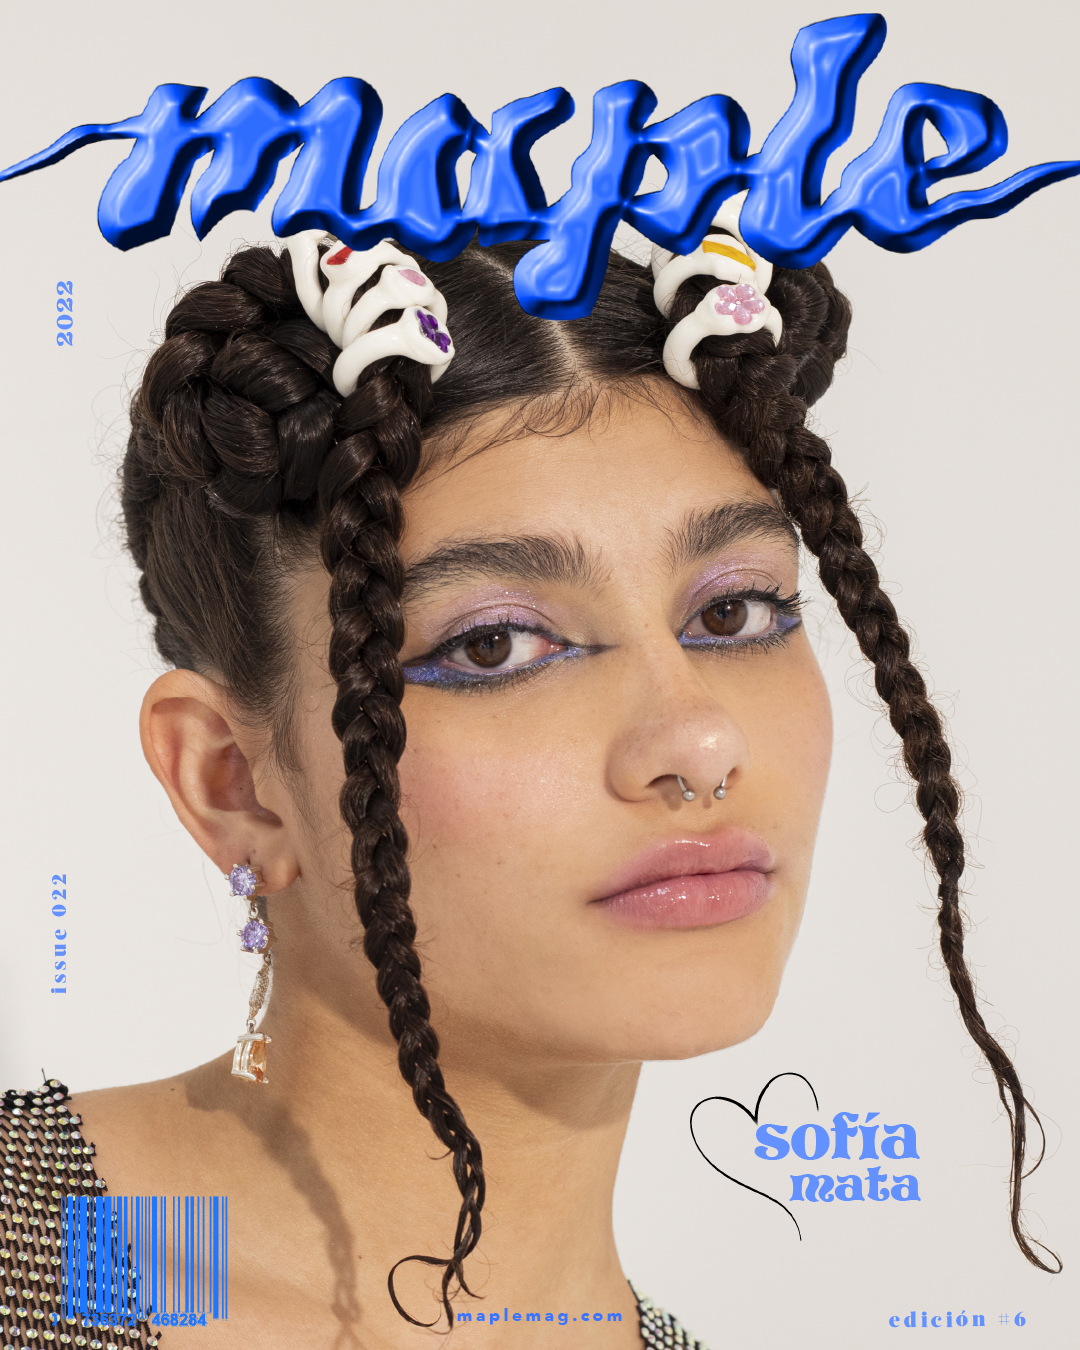 Sofia Mata - ISSUE 022 | Edición #6